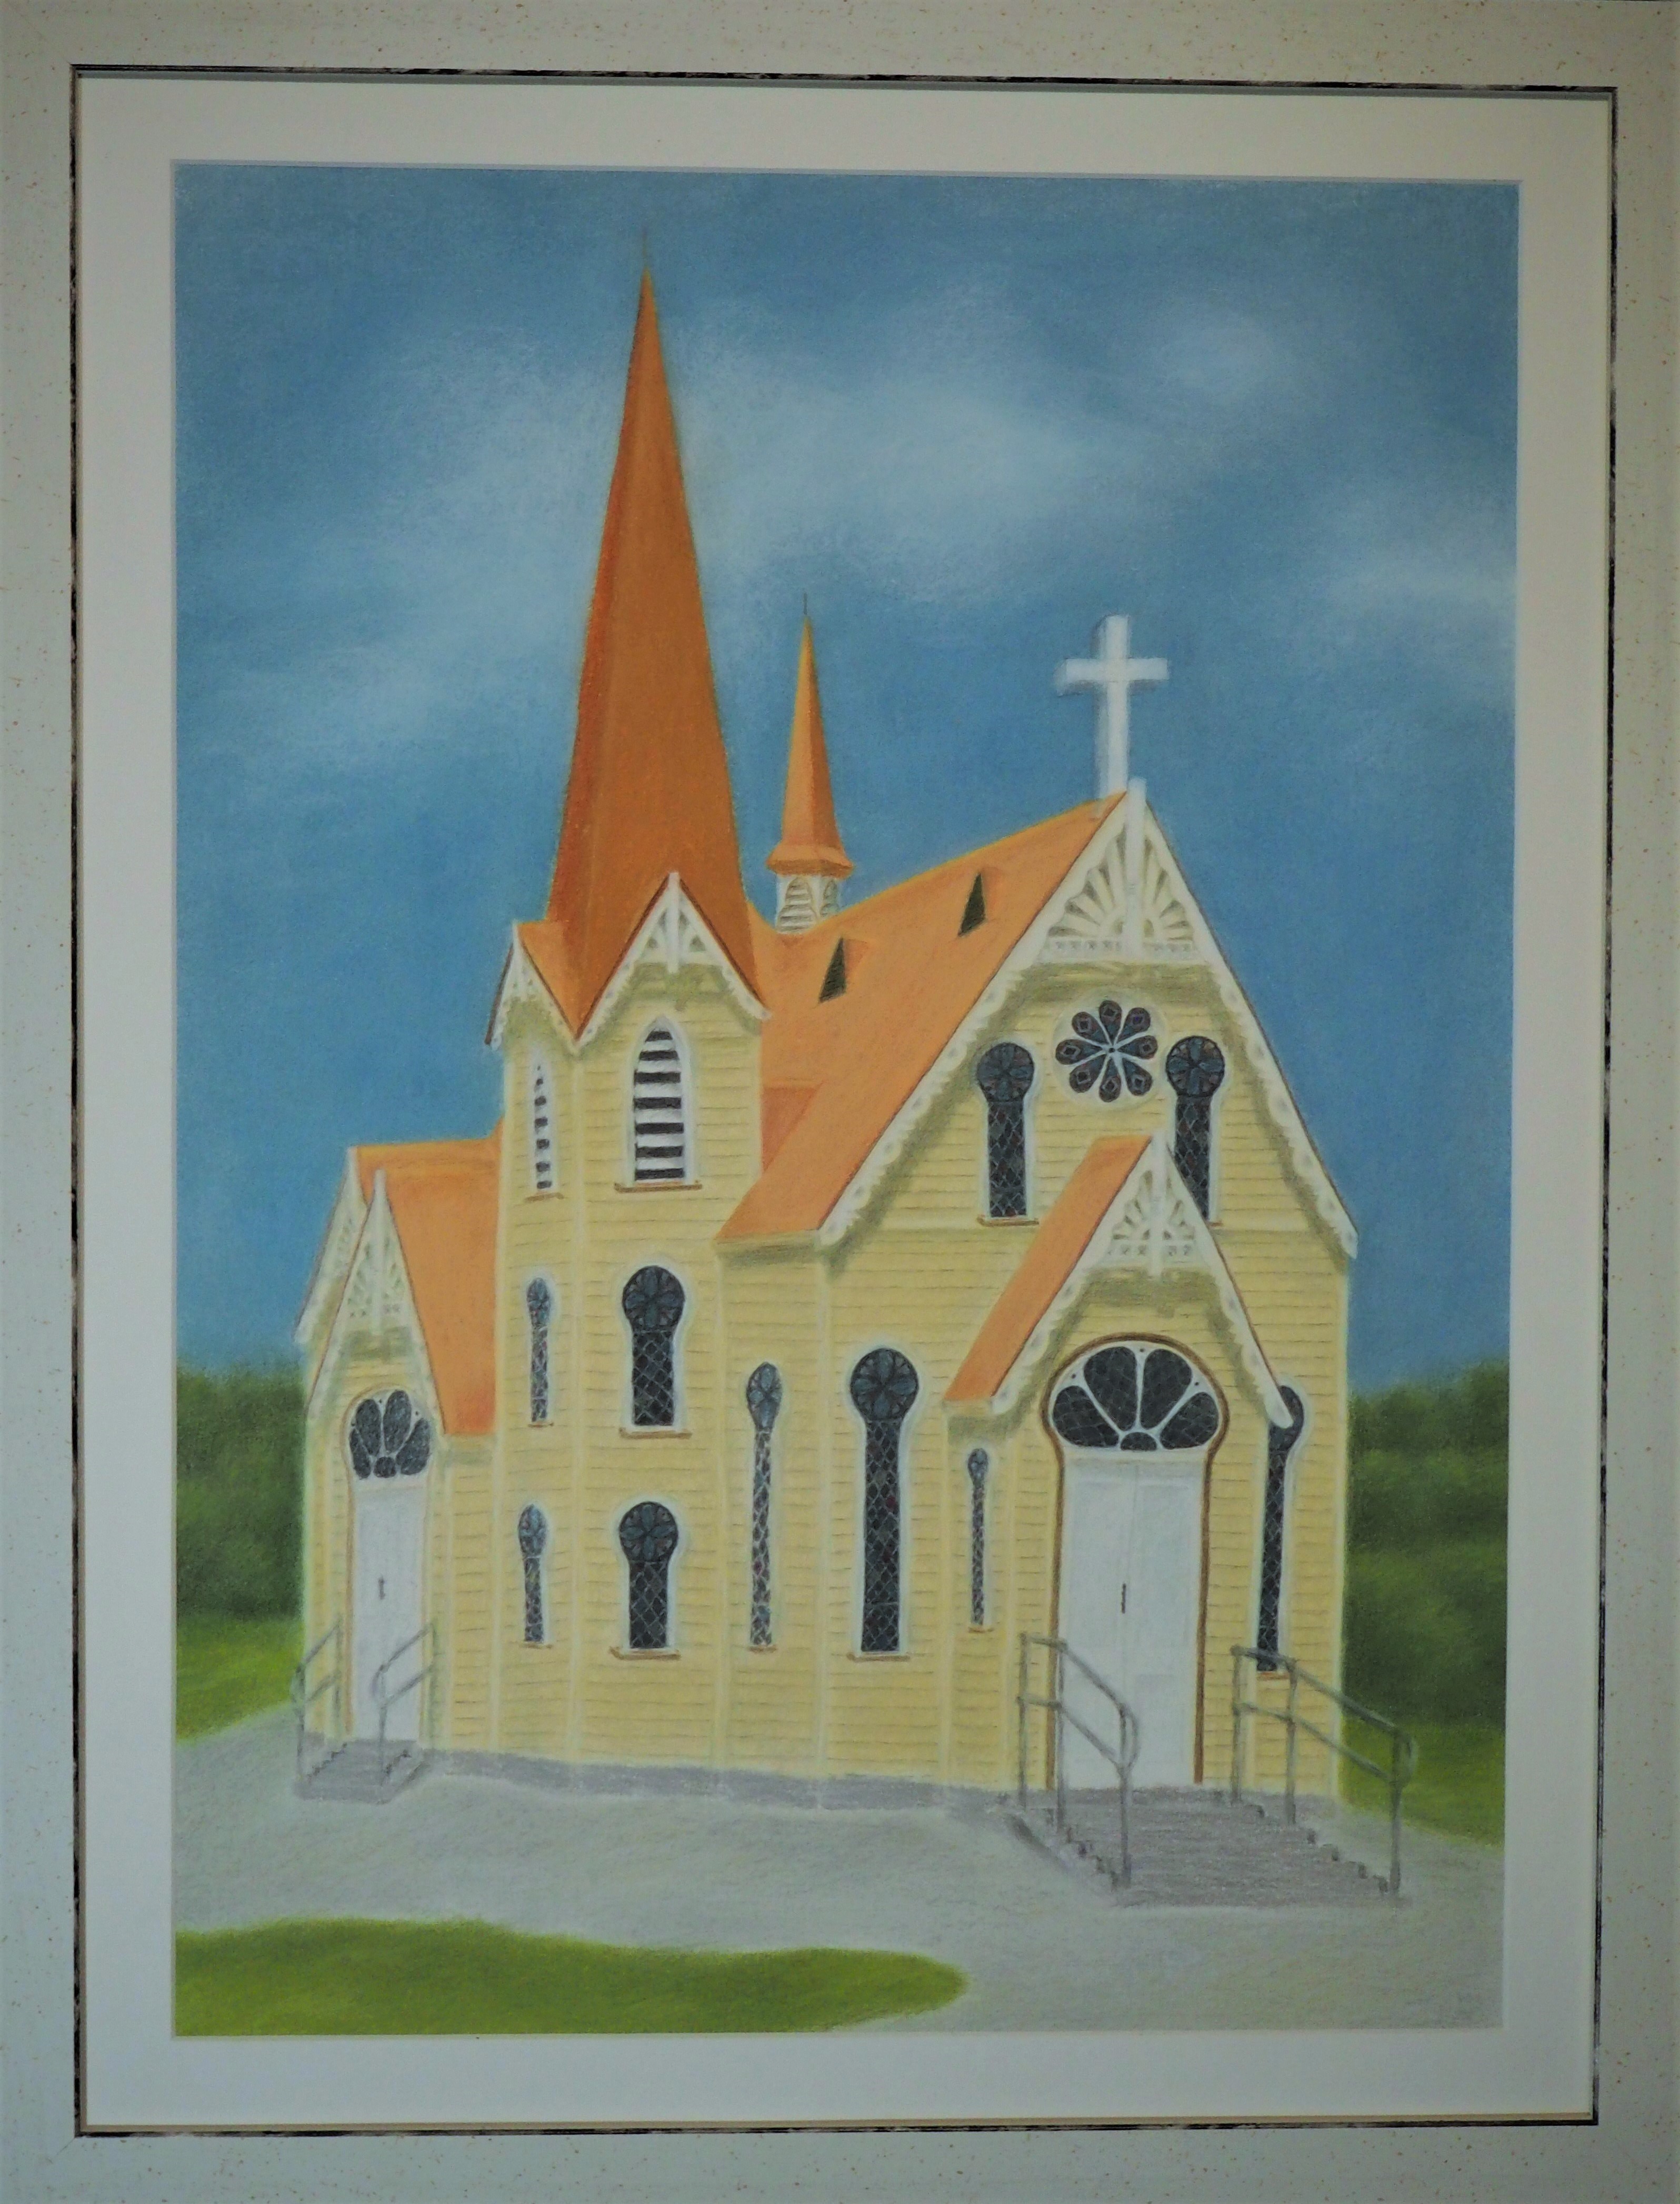 Uniting Church, Penguin TAS by Craig Parris | Lethbridge 20000 2021 Finalists | Lethbridge Gallery